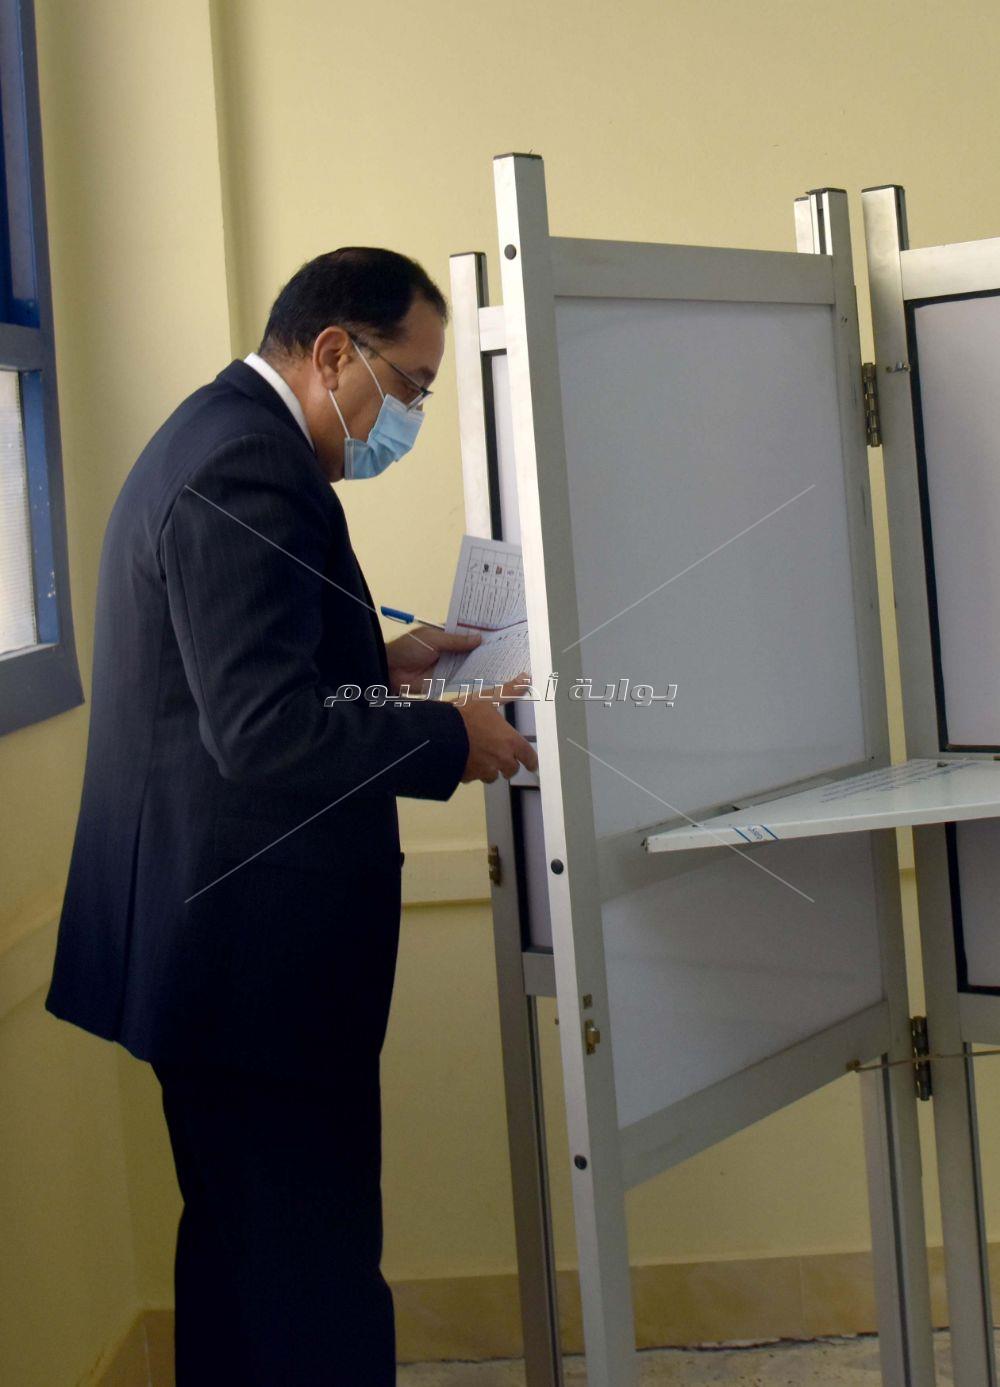 رئيس الوزراء يدلى بصوته في انتخابات مجلس النواب بالشيخ زايد